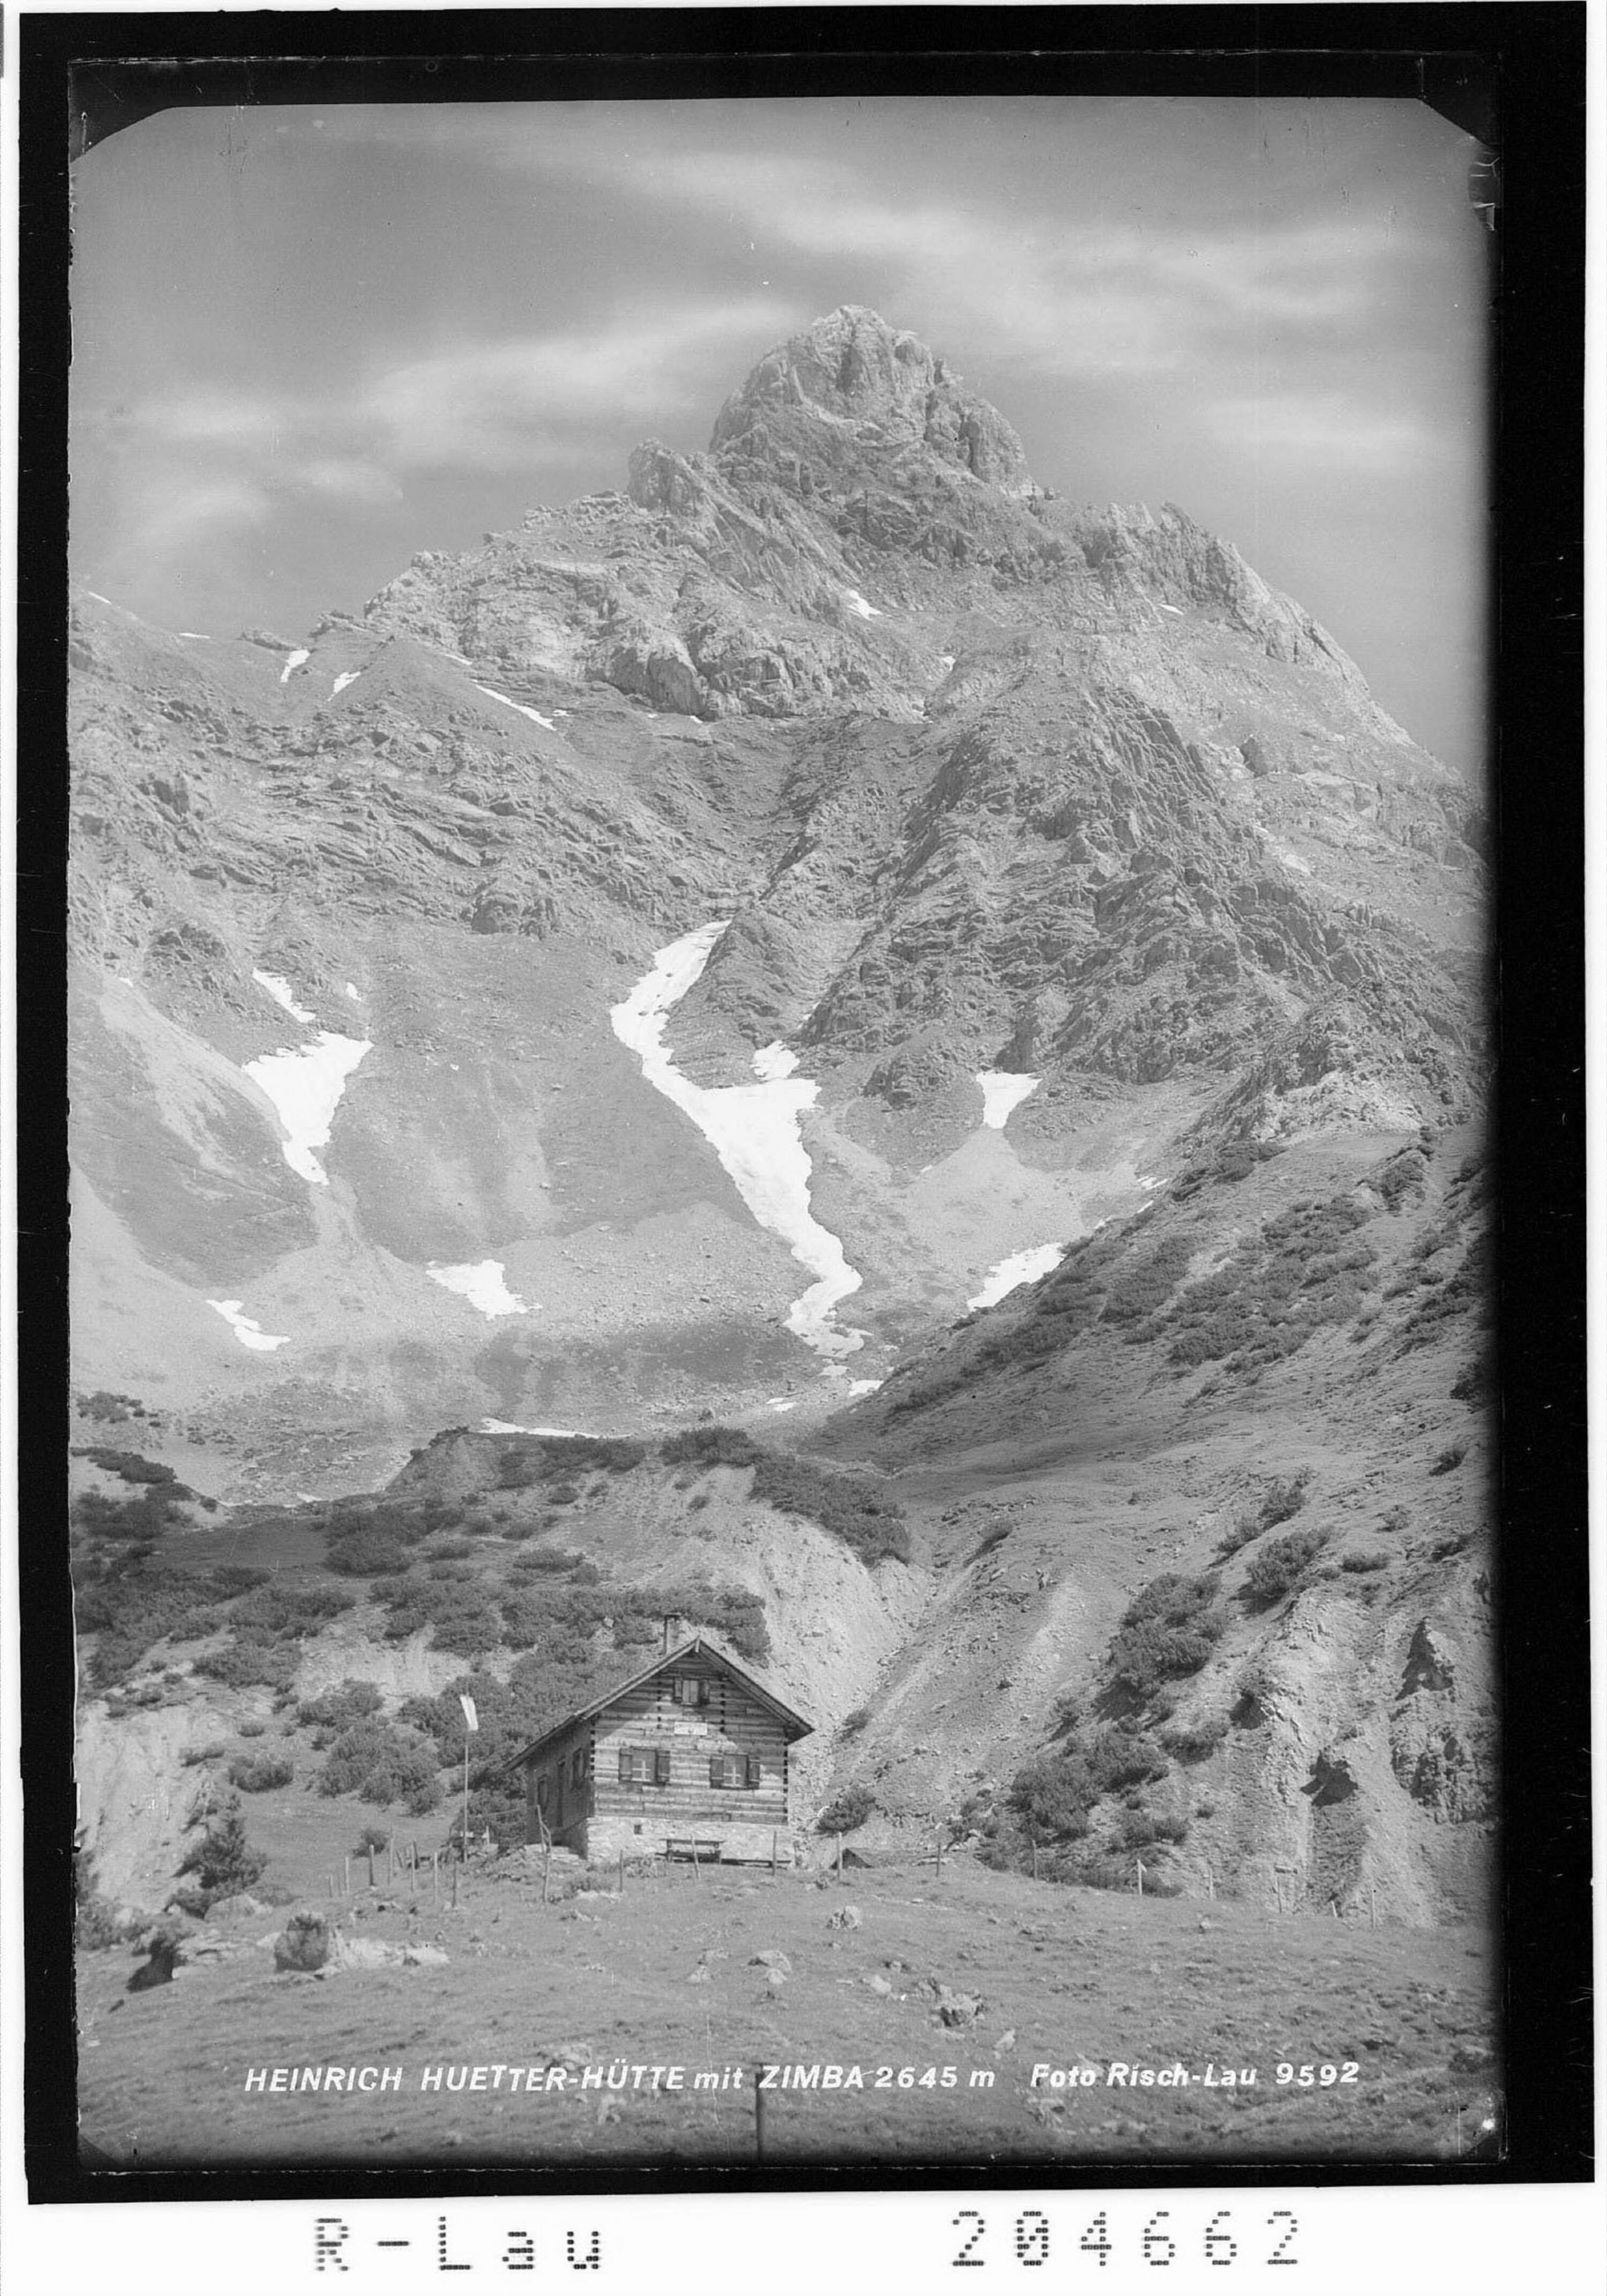 Heinrich Hueter Hütte mit Zimba 2645 m></div>


    <hr>
    <div class=